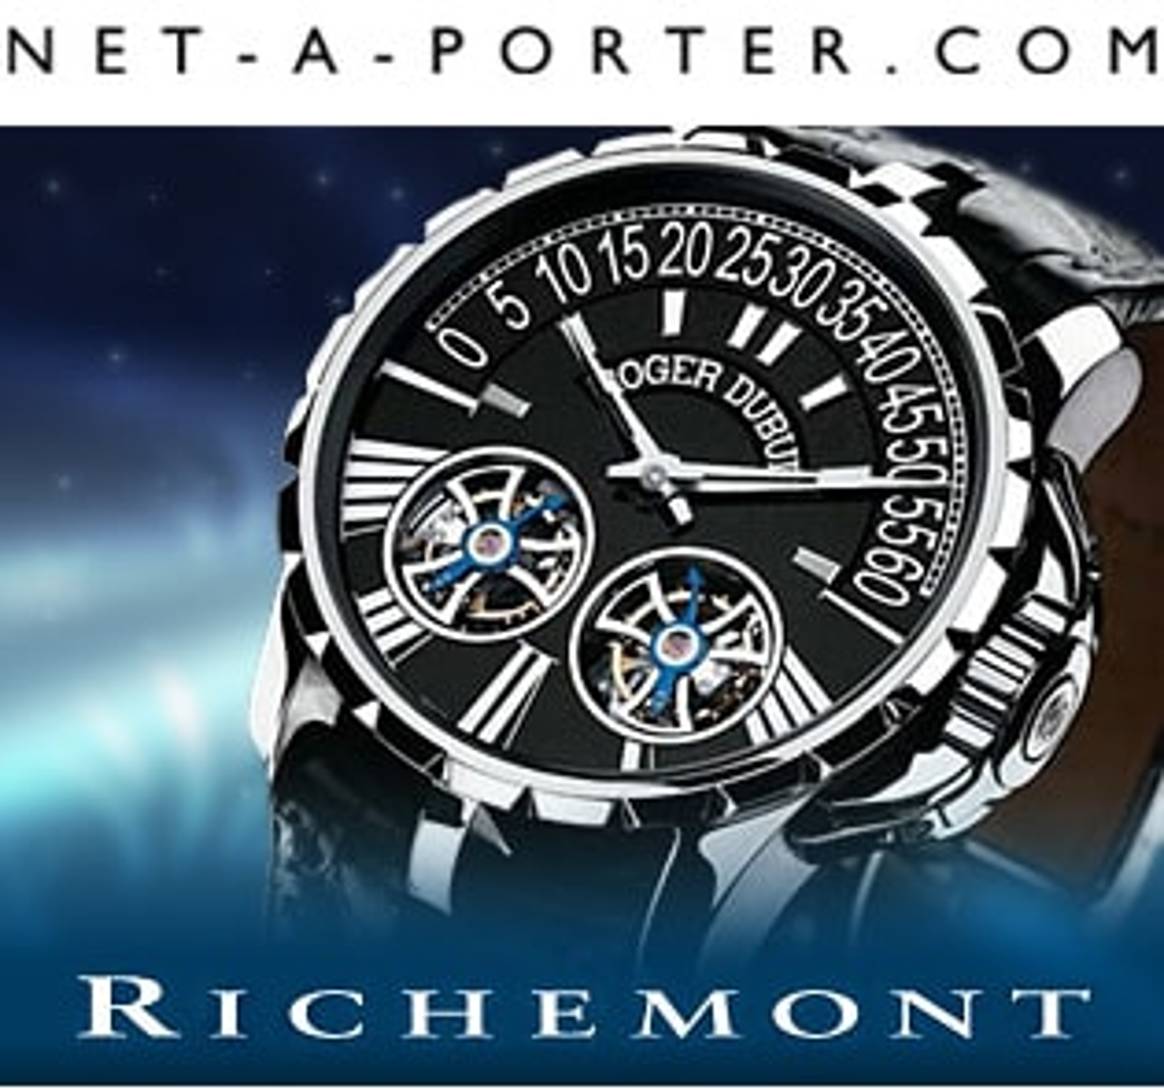 Richemont confirma la compra de Net-à-Porter.com